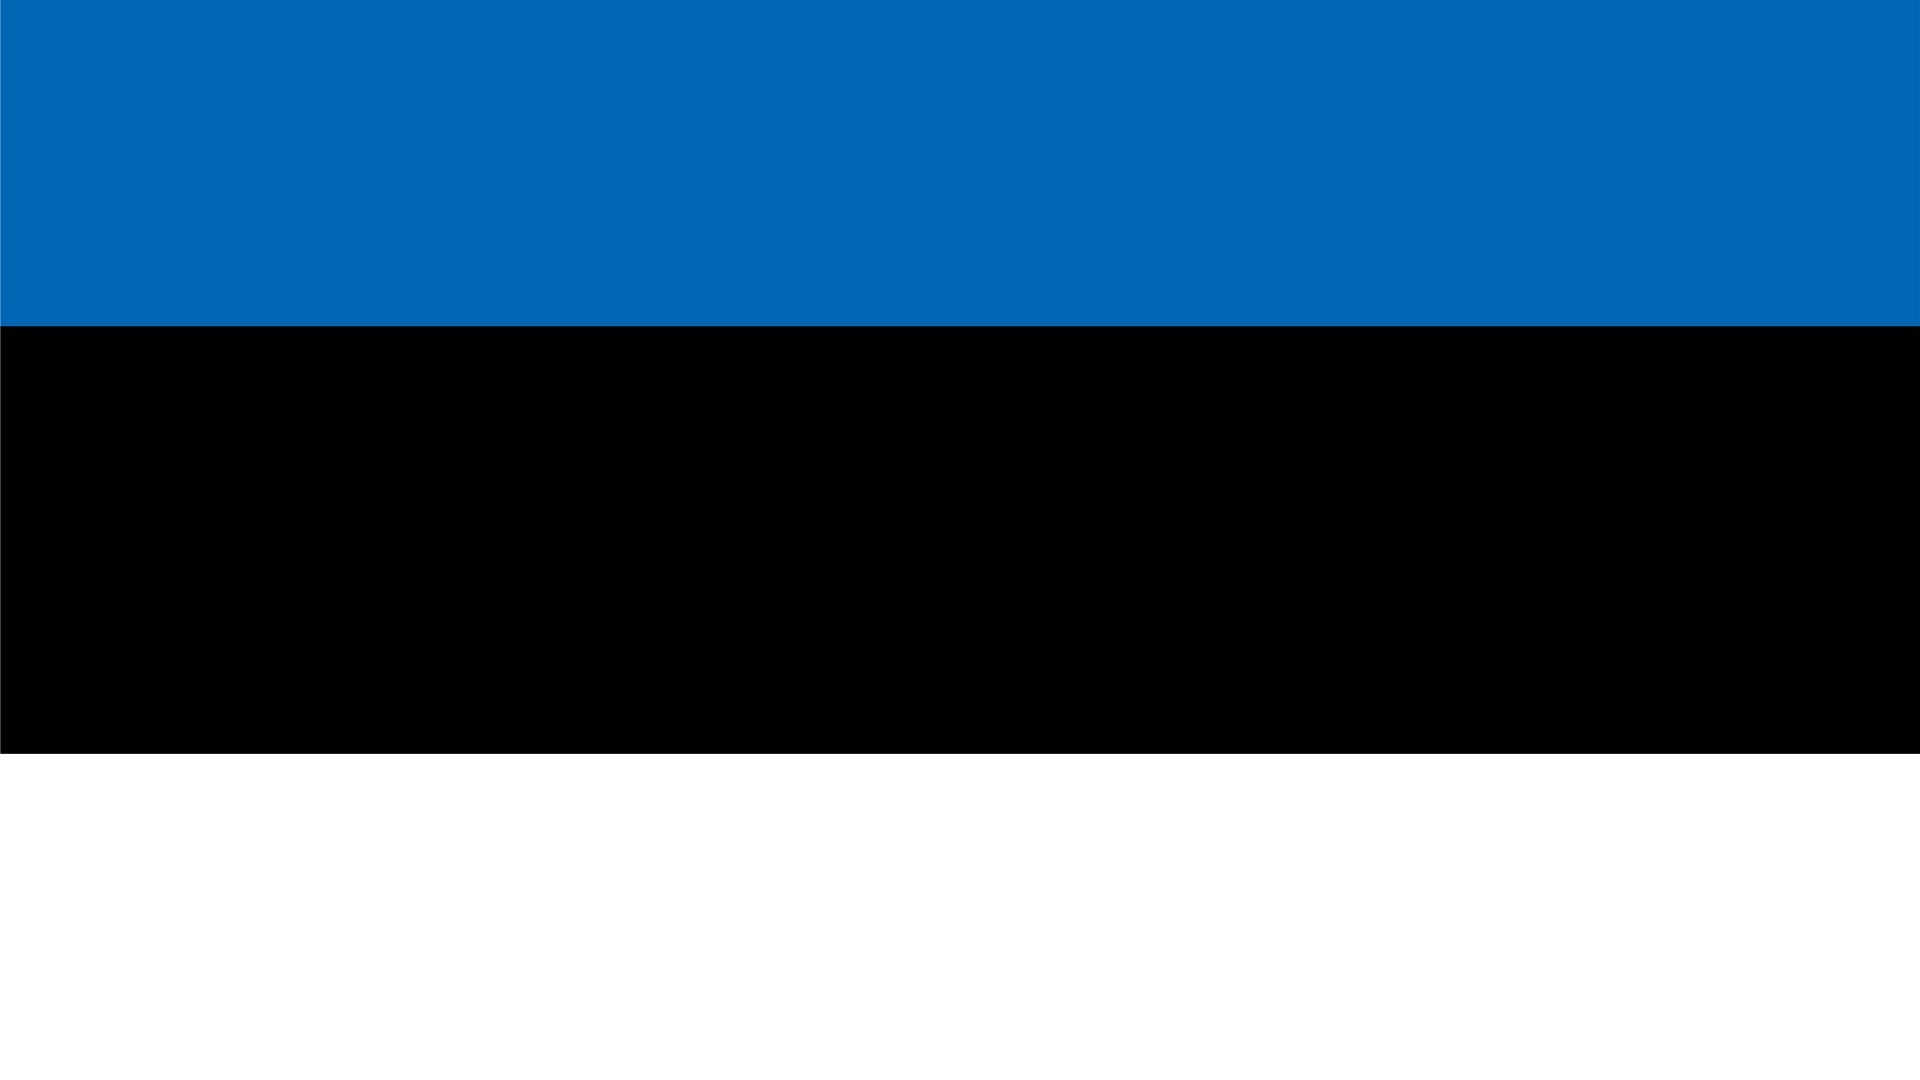 A bandeira da Estónia (português europeu) ou bandeira nacional da Estônia (português brasileiro) contém três listras horizontais nas cores azul (no topo), preto e branco.